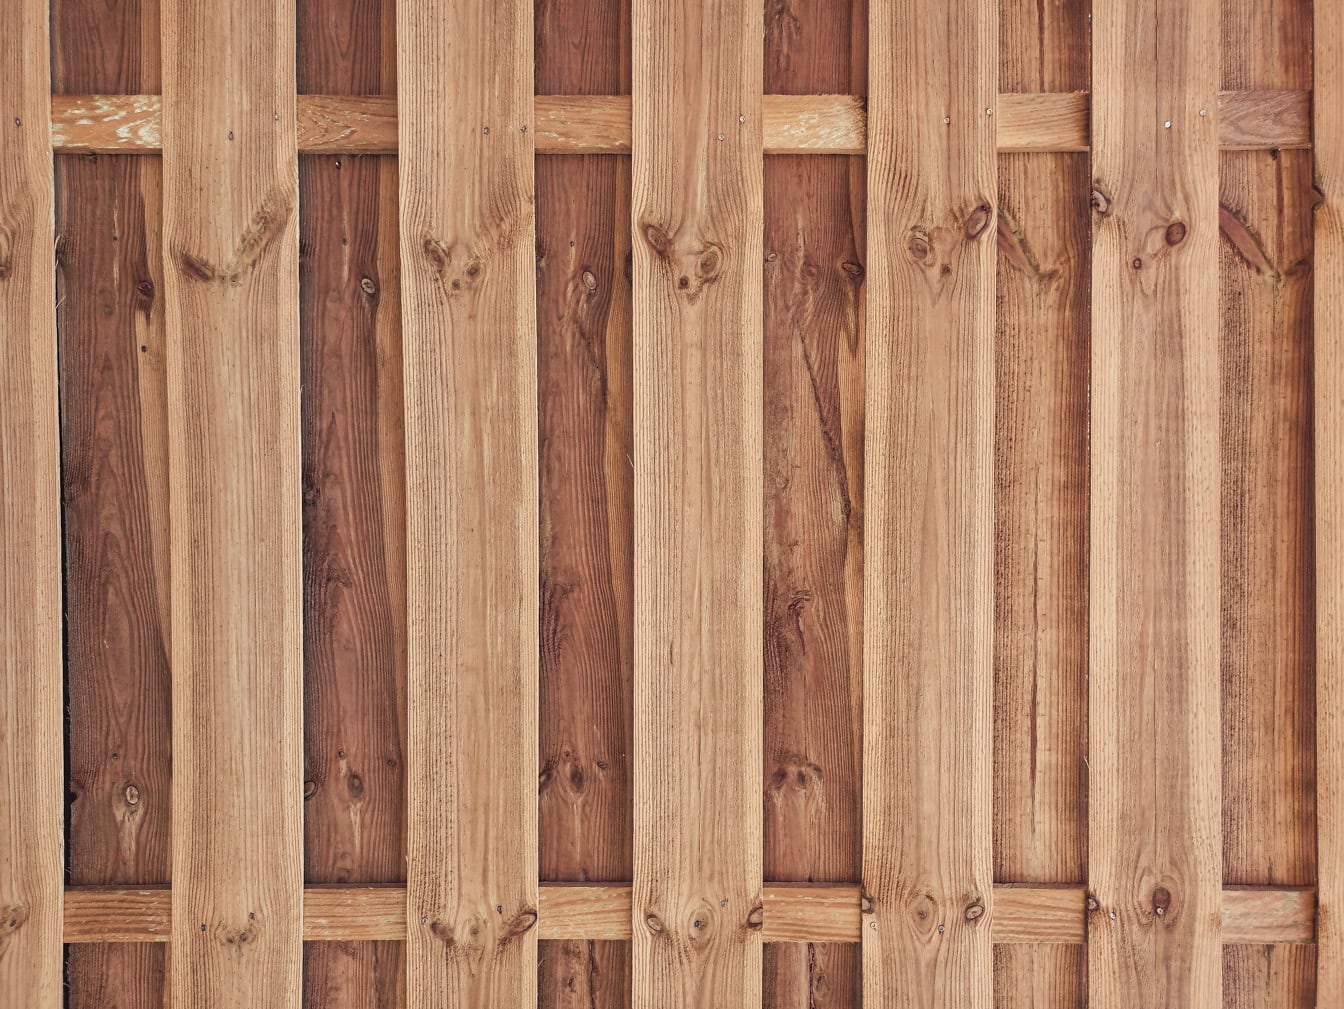 Một tấm gỗ được làm từ những thanh gỗ cứng xếp chồng lên nhau theo chiều dọc dưới dạng hàng rào picket với nền làm bằng ván có nút thắt